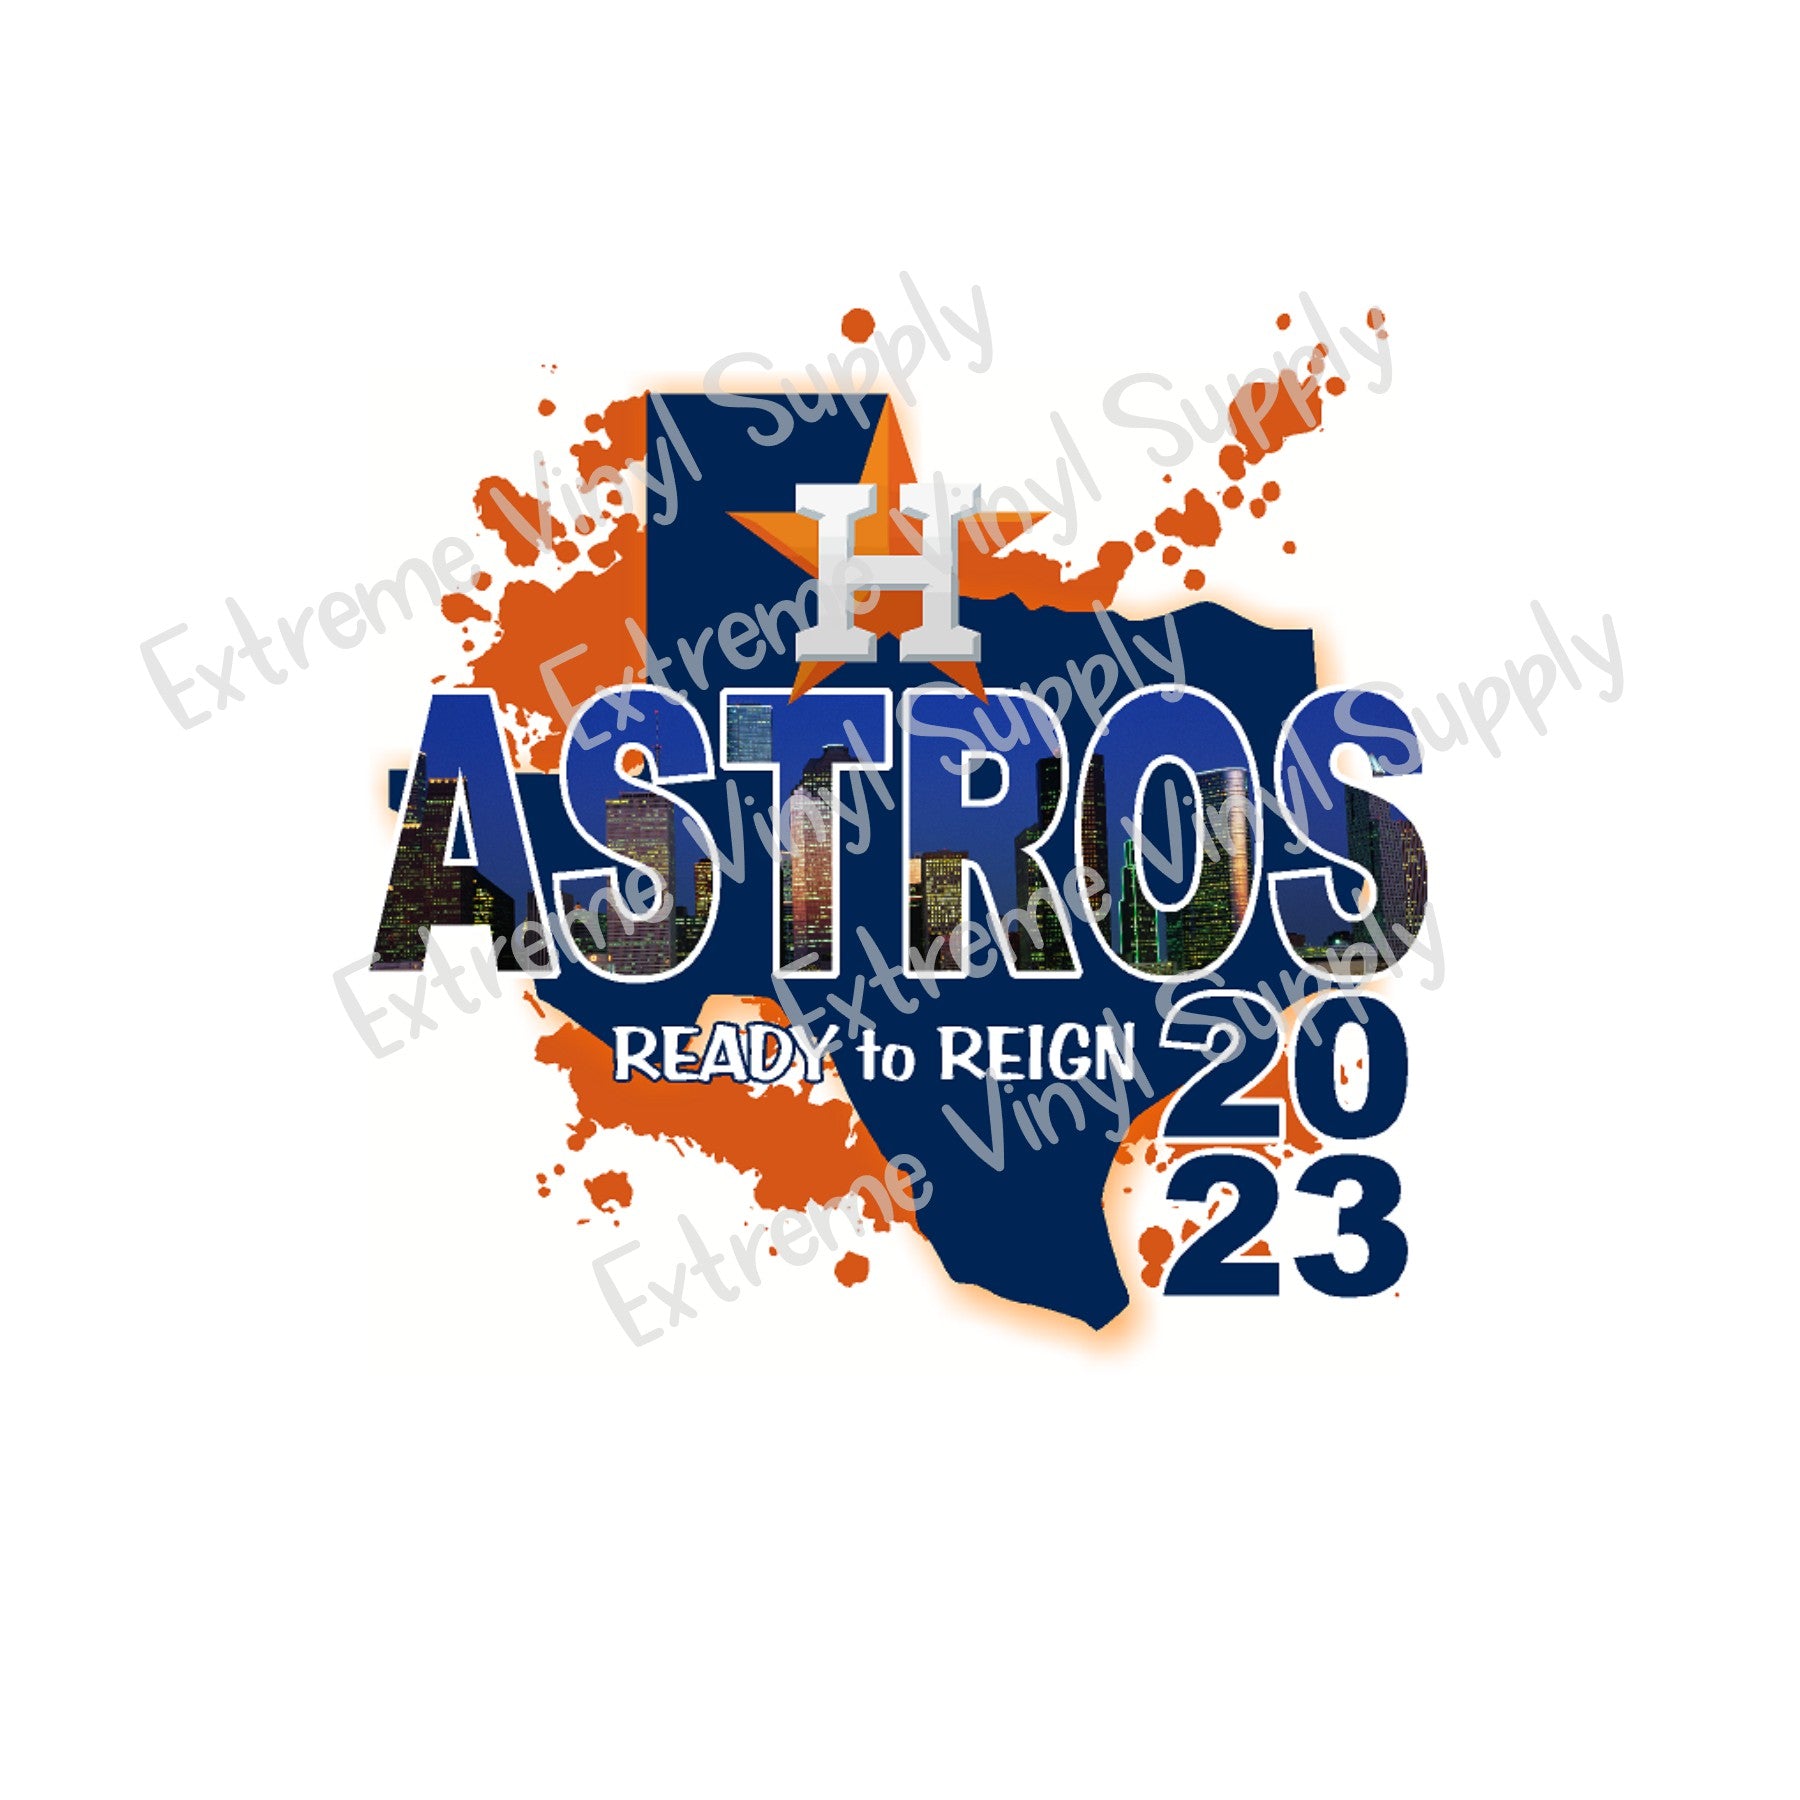 Astros astros astros-DTF – ABIDesignstore